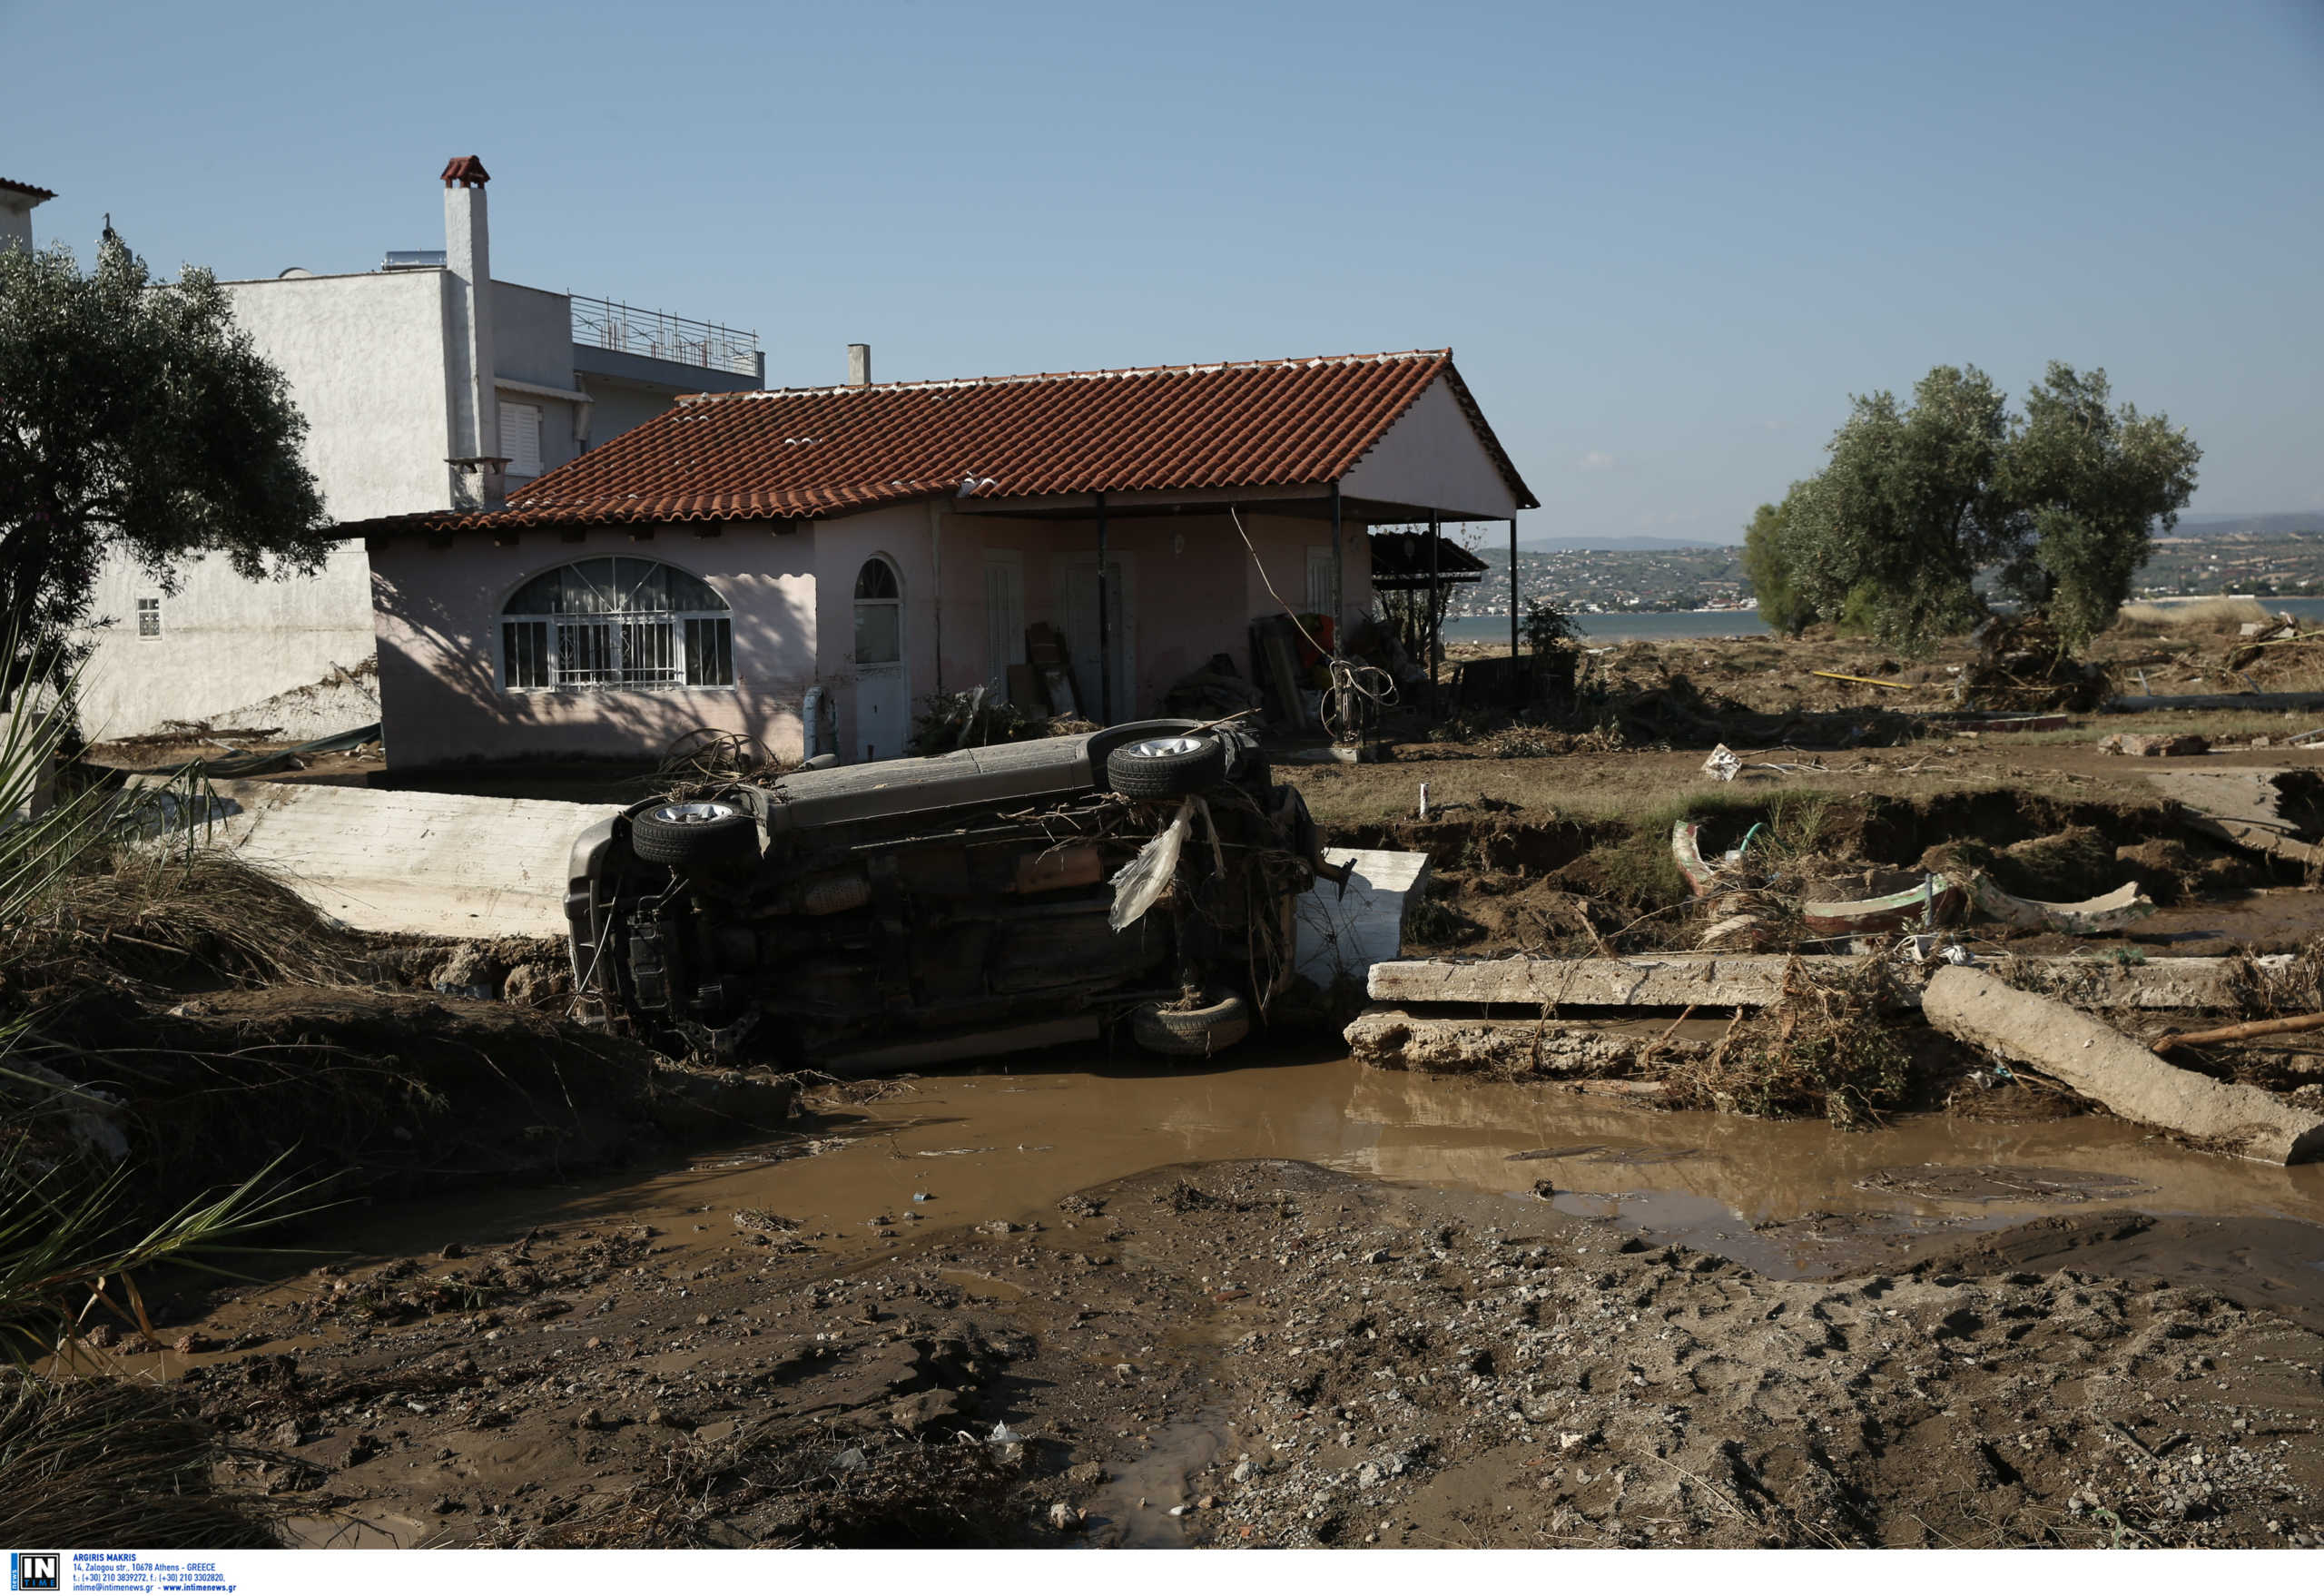 Χωρίς παράβολα αντικαθιστούν τις άδειες οδήγησης που καταστράφηκαν στις πλημμύρες της Εύβοιας